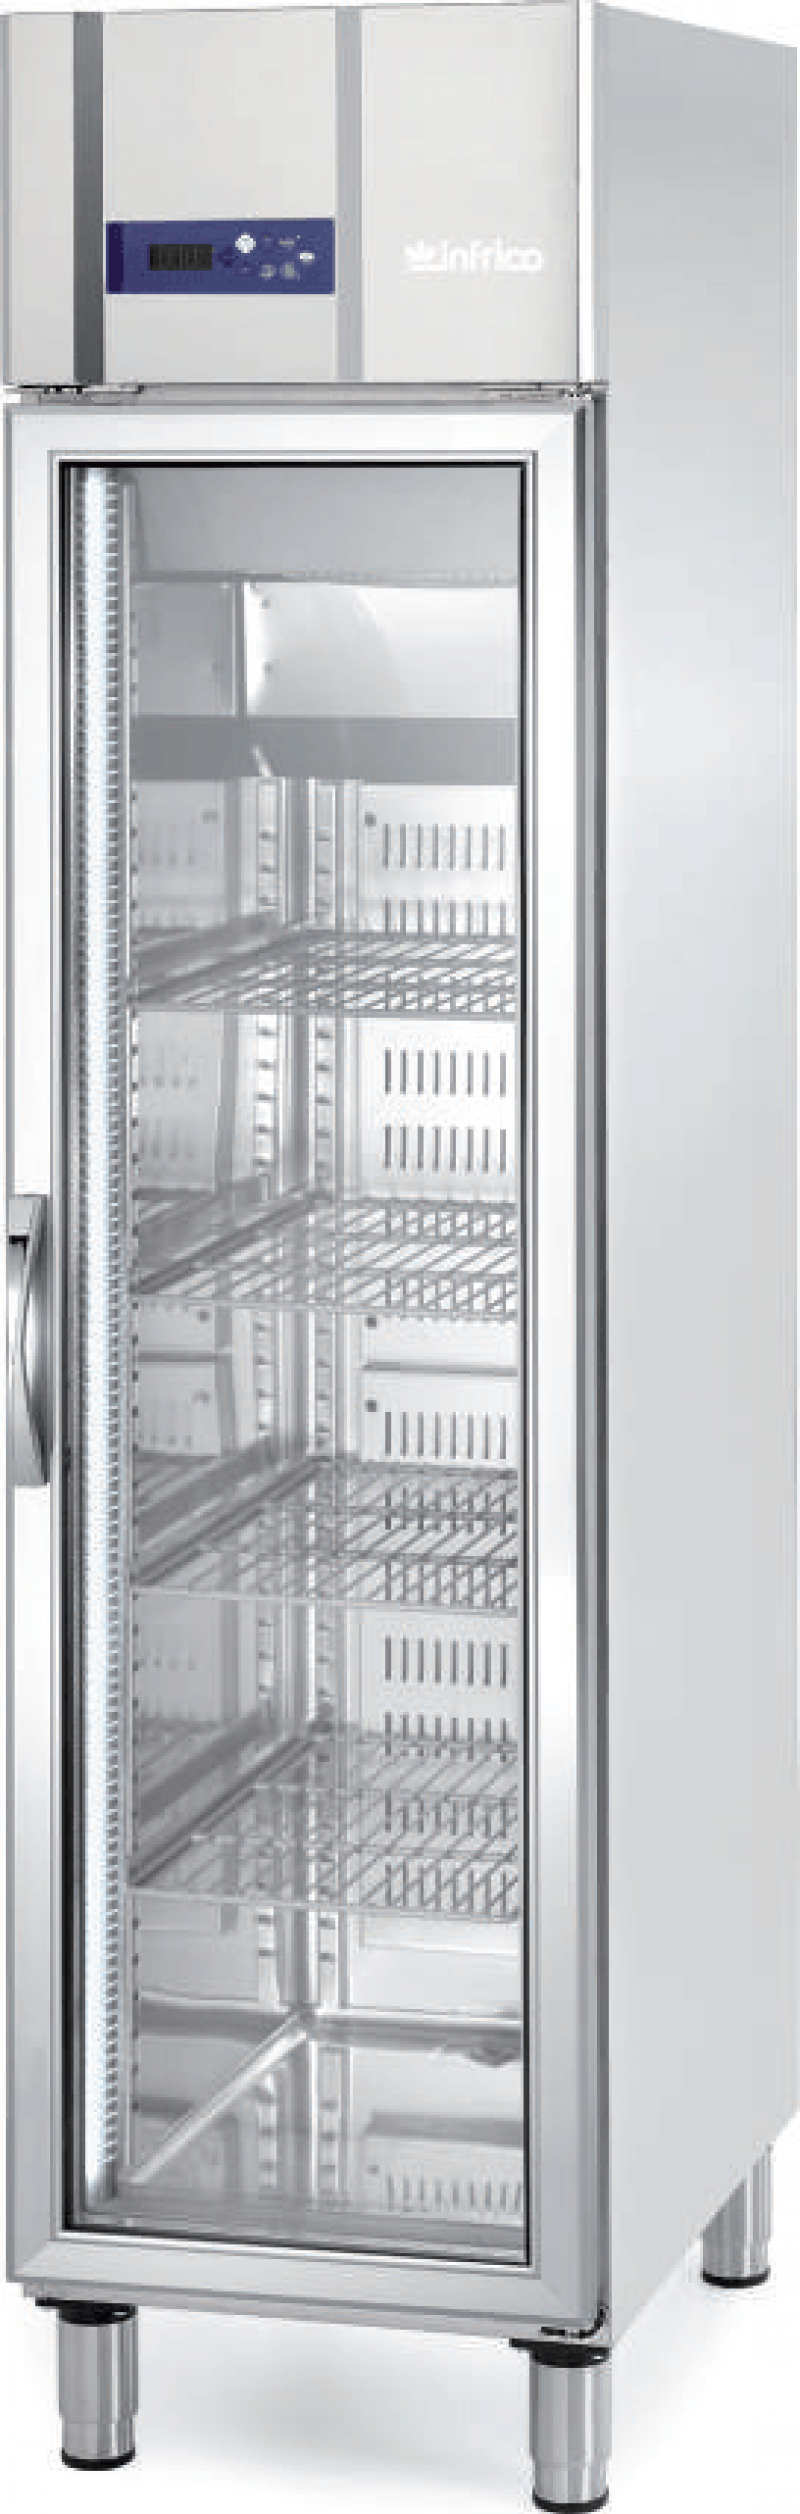 Armario expositor refrigeración gastronorm GN 1/1 Infrico AGN 300 CR